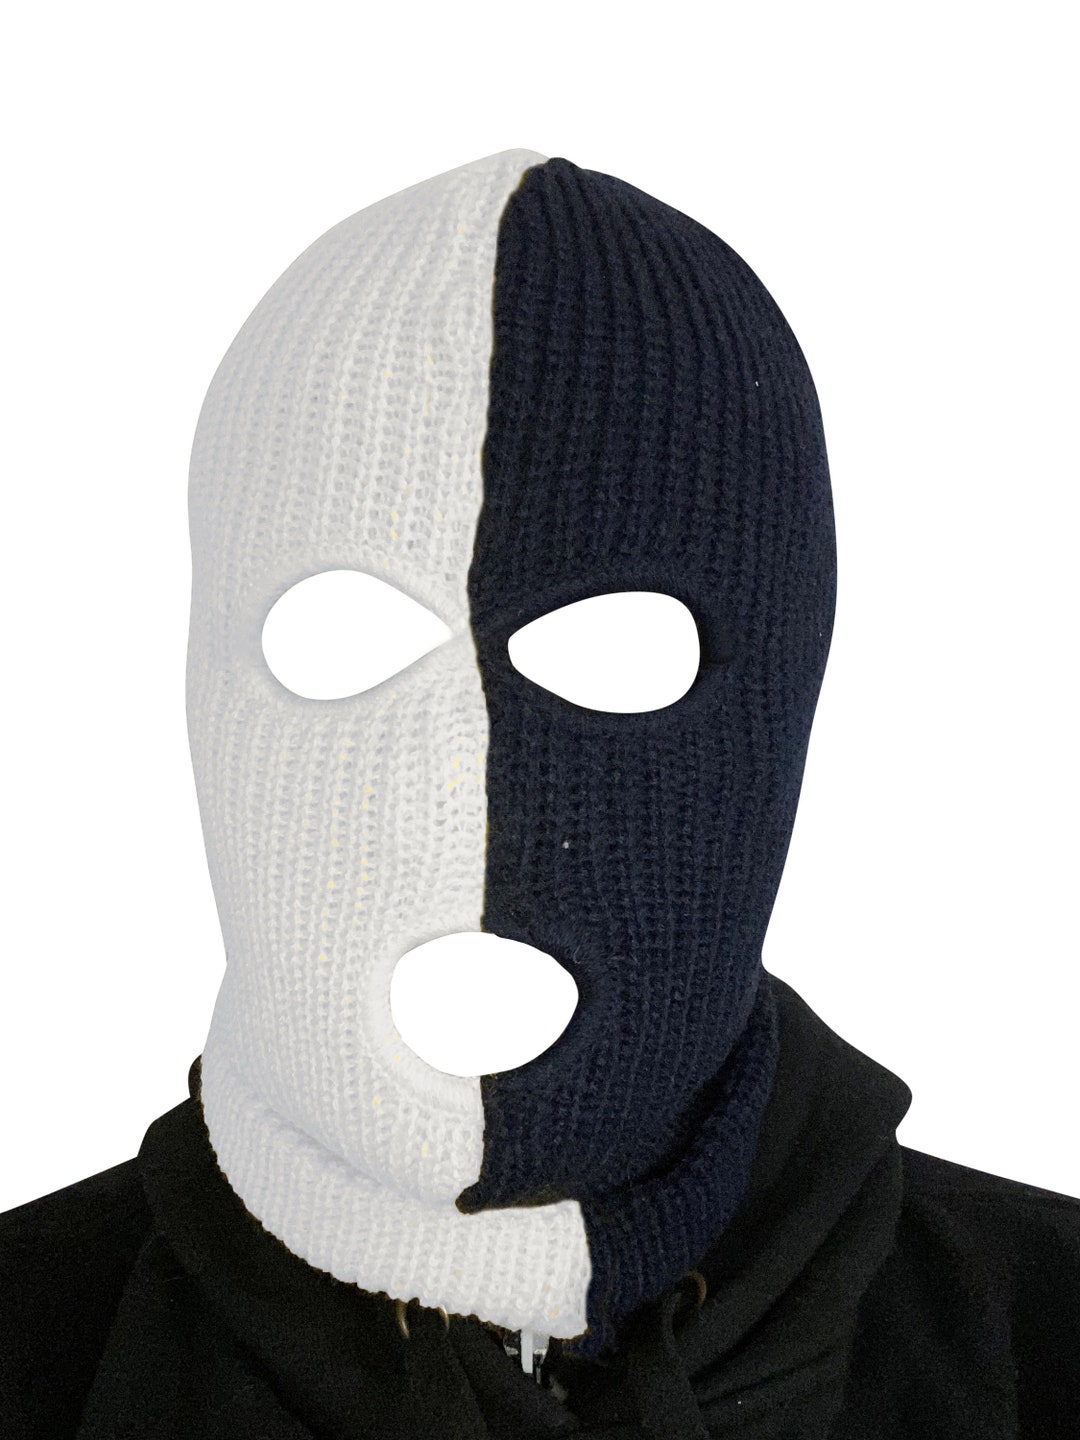 LV Monogram Black/White Ski Mask  Ski mask, Lv monogram, Ski mask